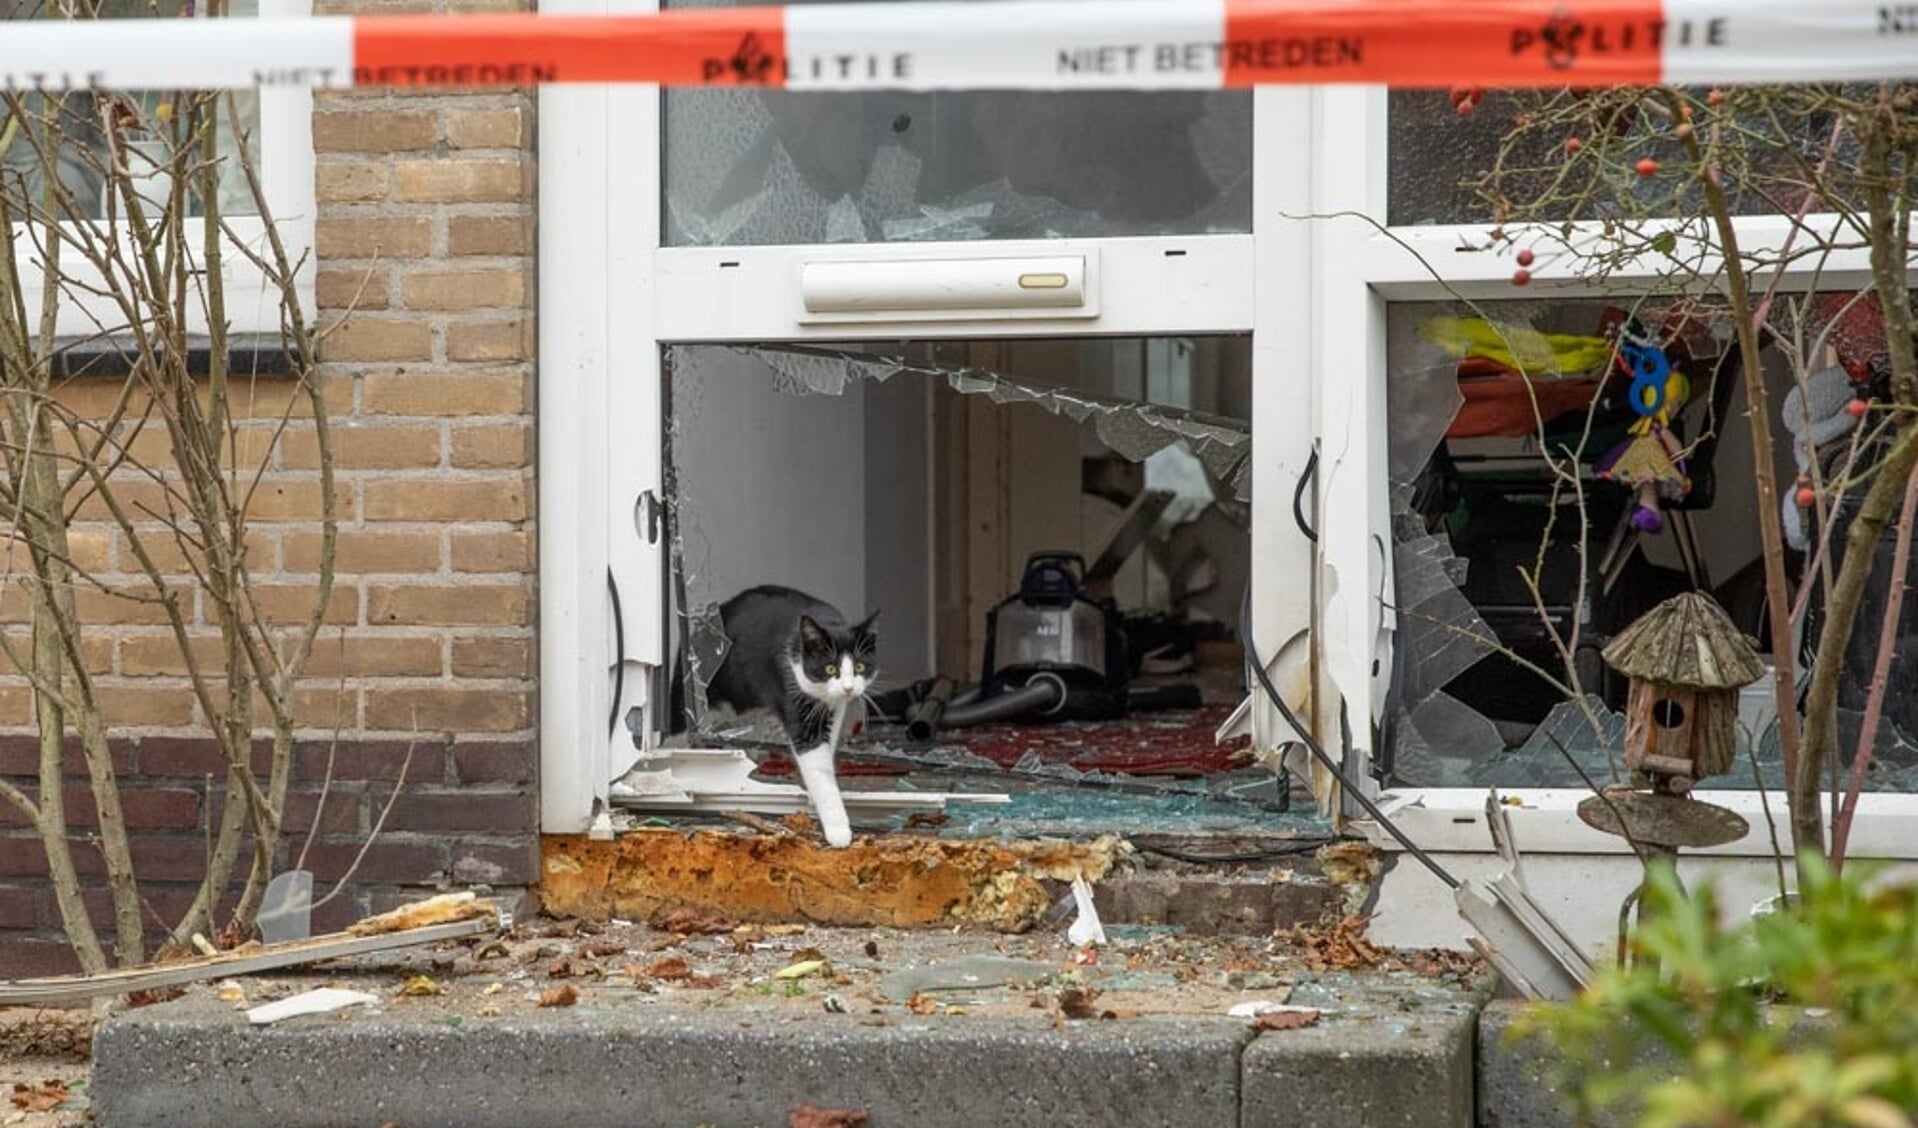 Politie onderzoek na explosie in de Weteringstraat. 